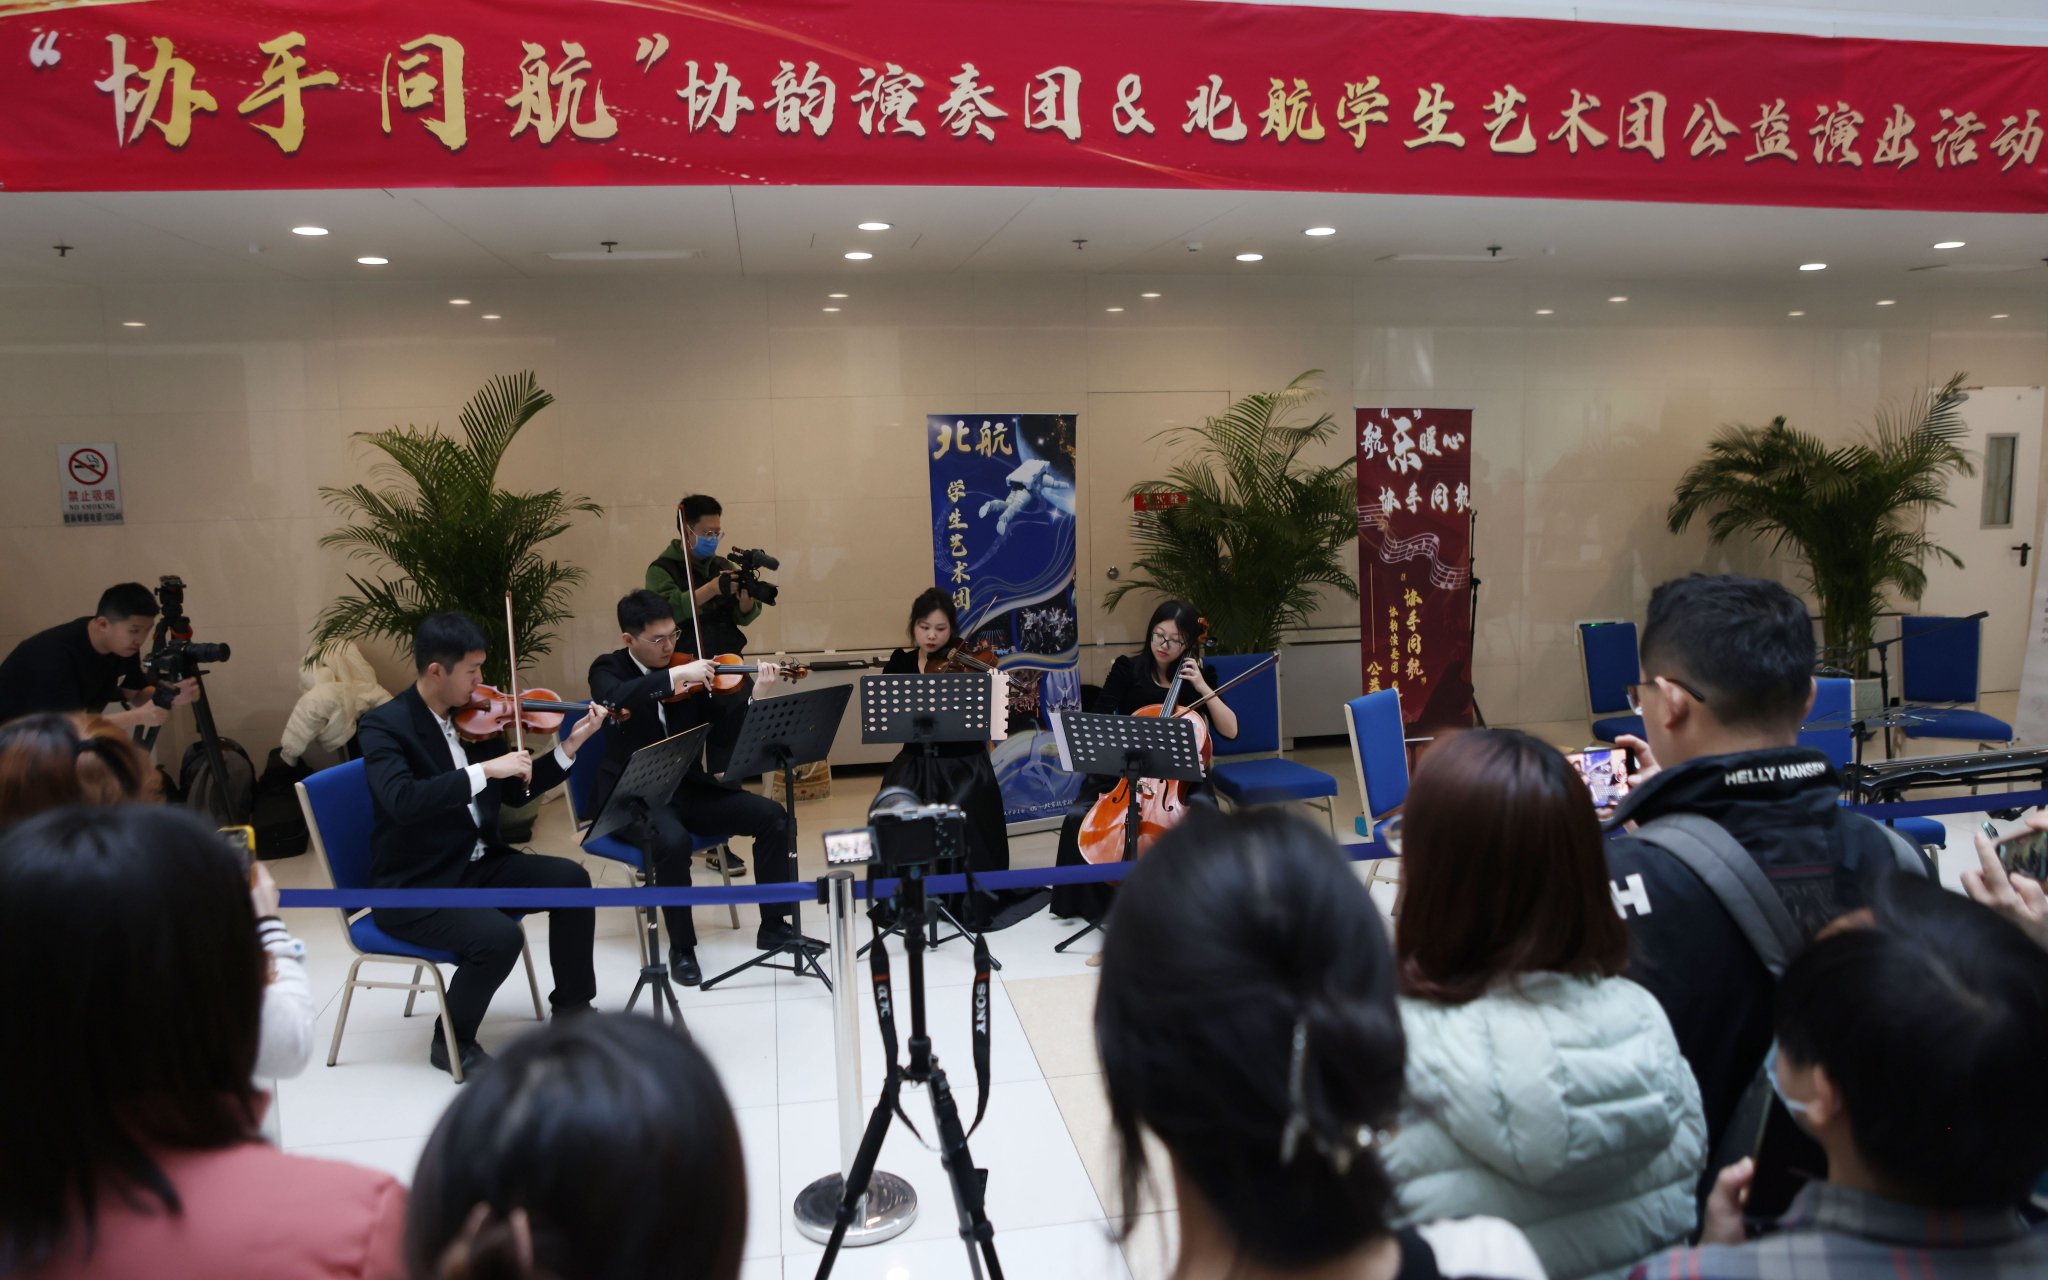 北京航空航天大學首次聯合北京協和醫院協韻演奏團舉辦的公益演出現場。 新京報記者李木易 攝